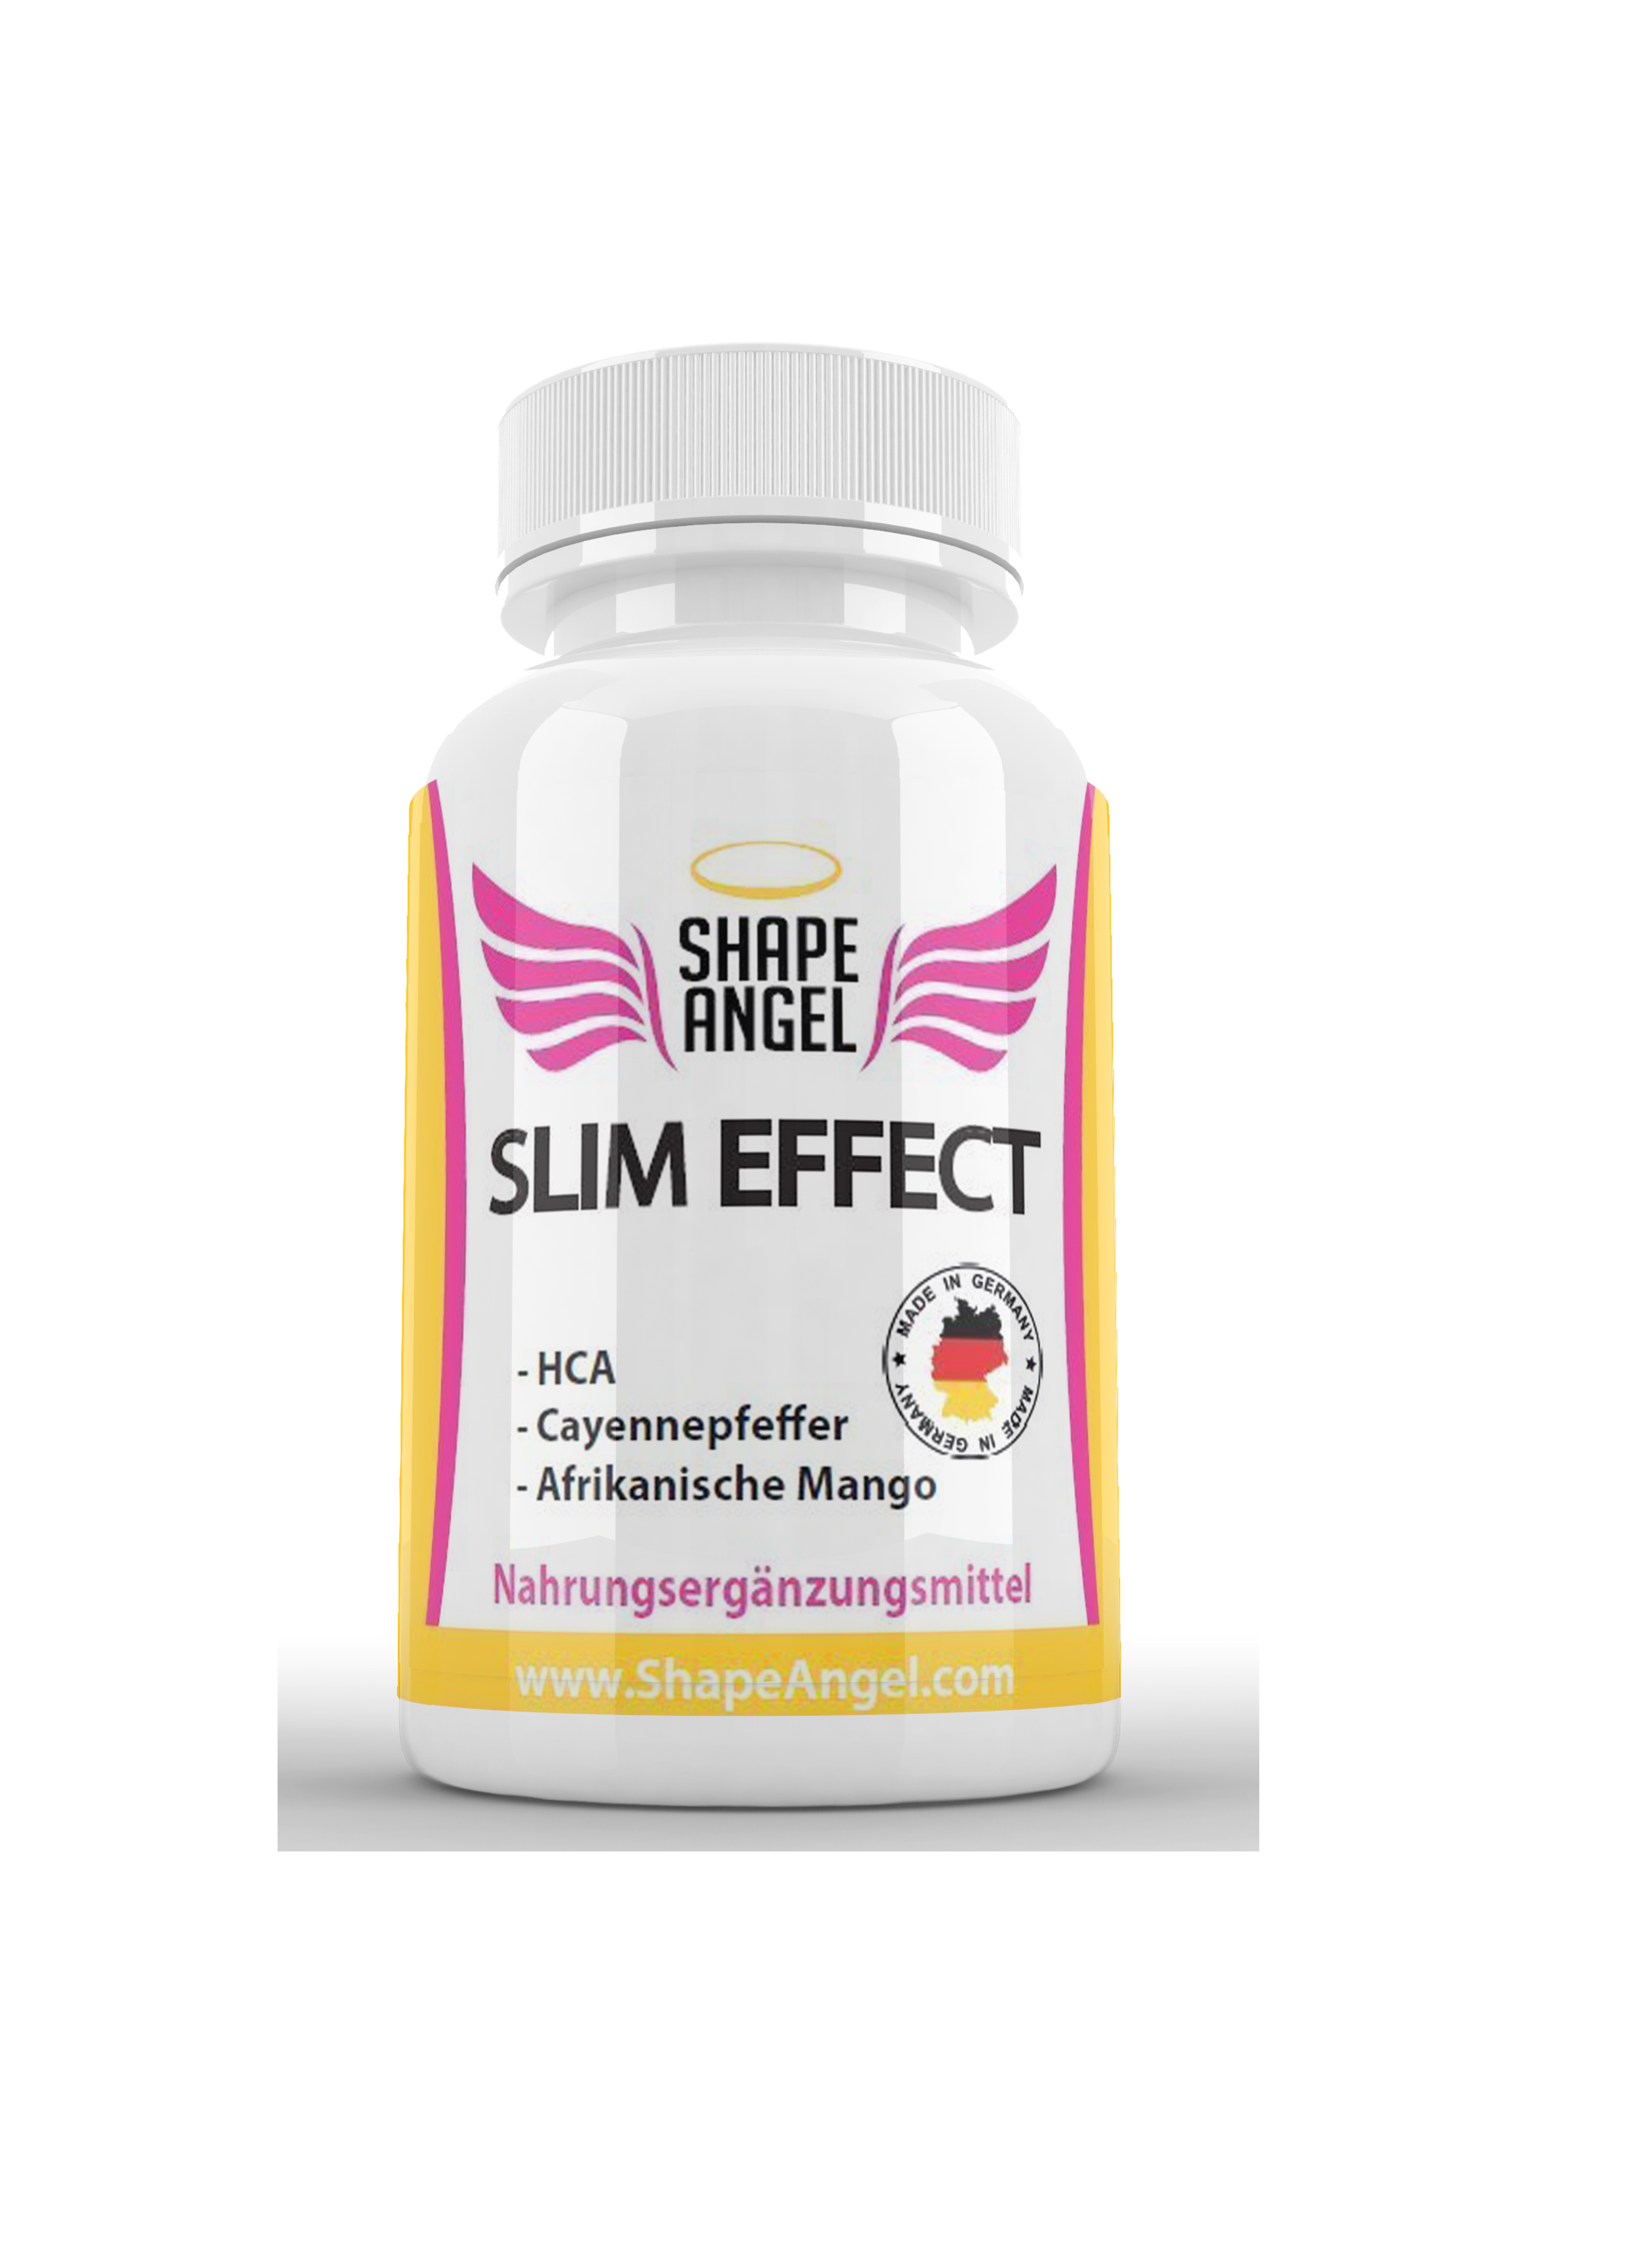 Slim Effect - Appetithemmer und Fatburner - Speziell für Frauen - BURNER - Appetit Control - HCA - Garcinia Cambogia - Afrikanische Mango - Cayennepfeffer - Ceylon Zimt - Ingwer - Guarana - Grüner Tee - Vitamin